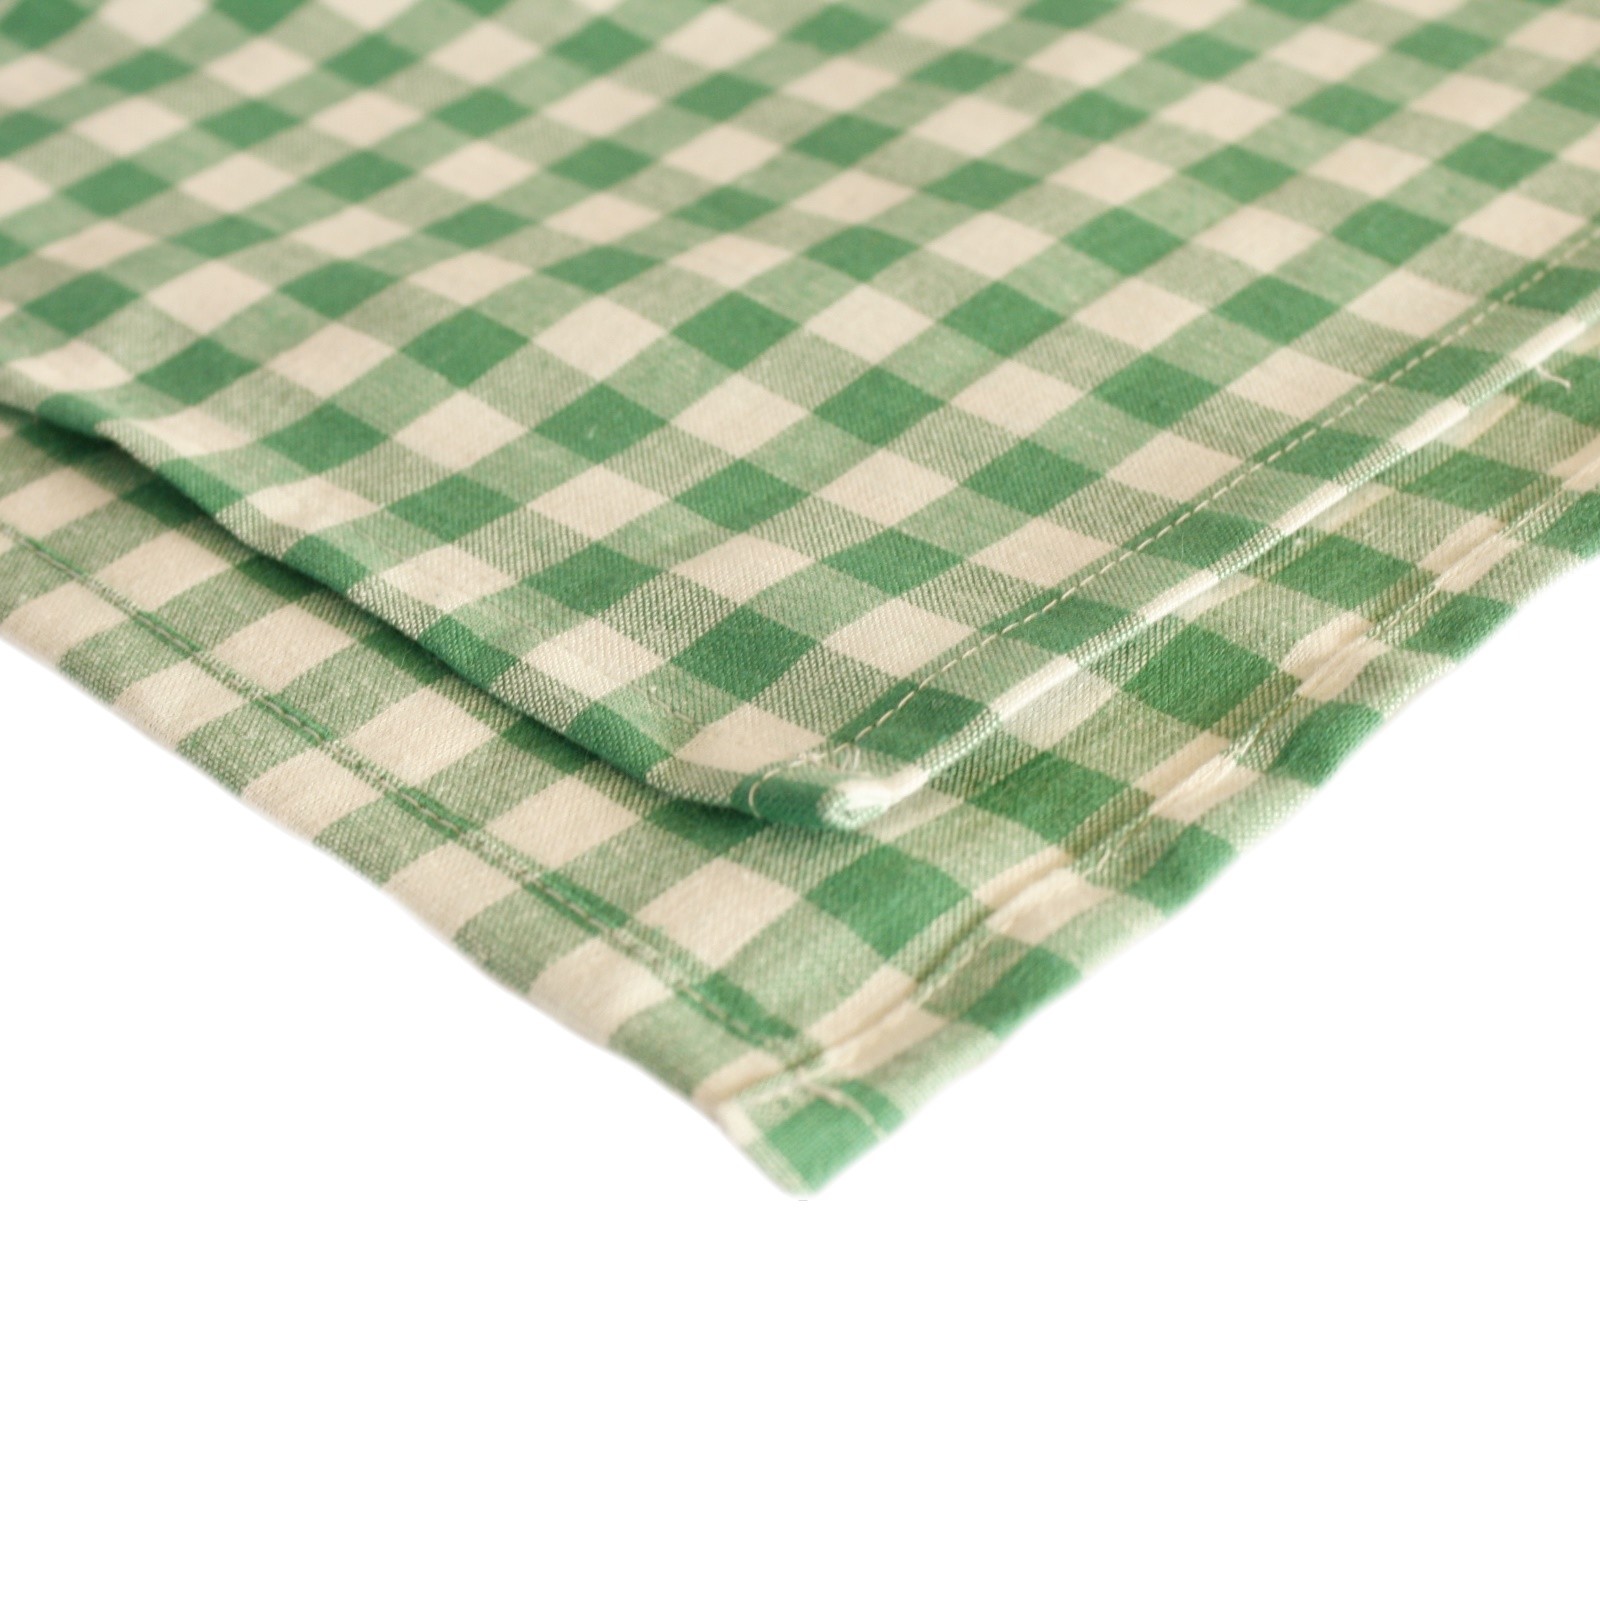 Tischdecke Karo 1x1 cm Grün Baumwolle-130x220 cm